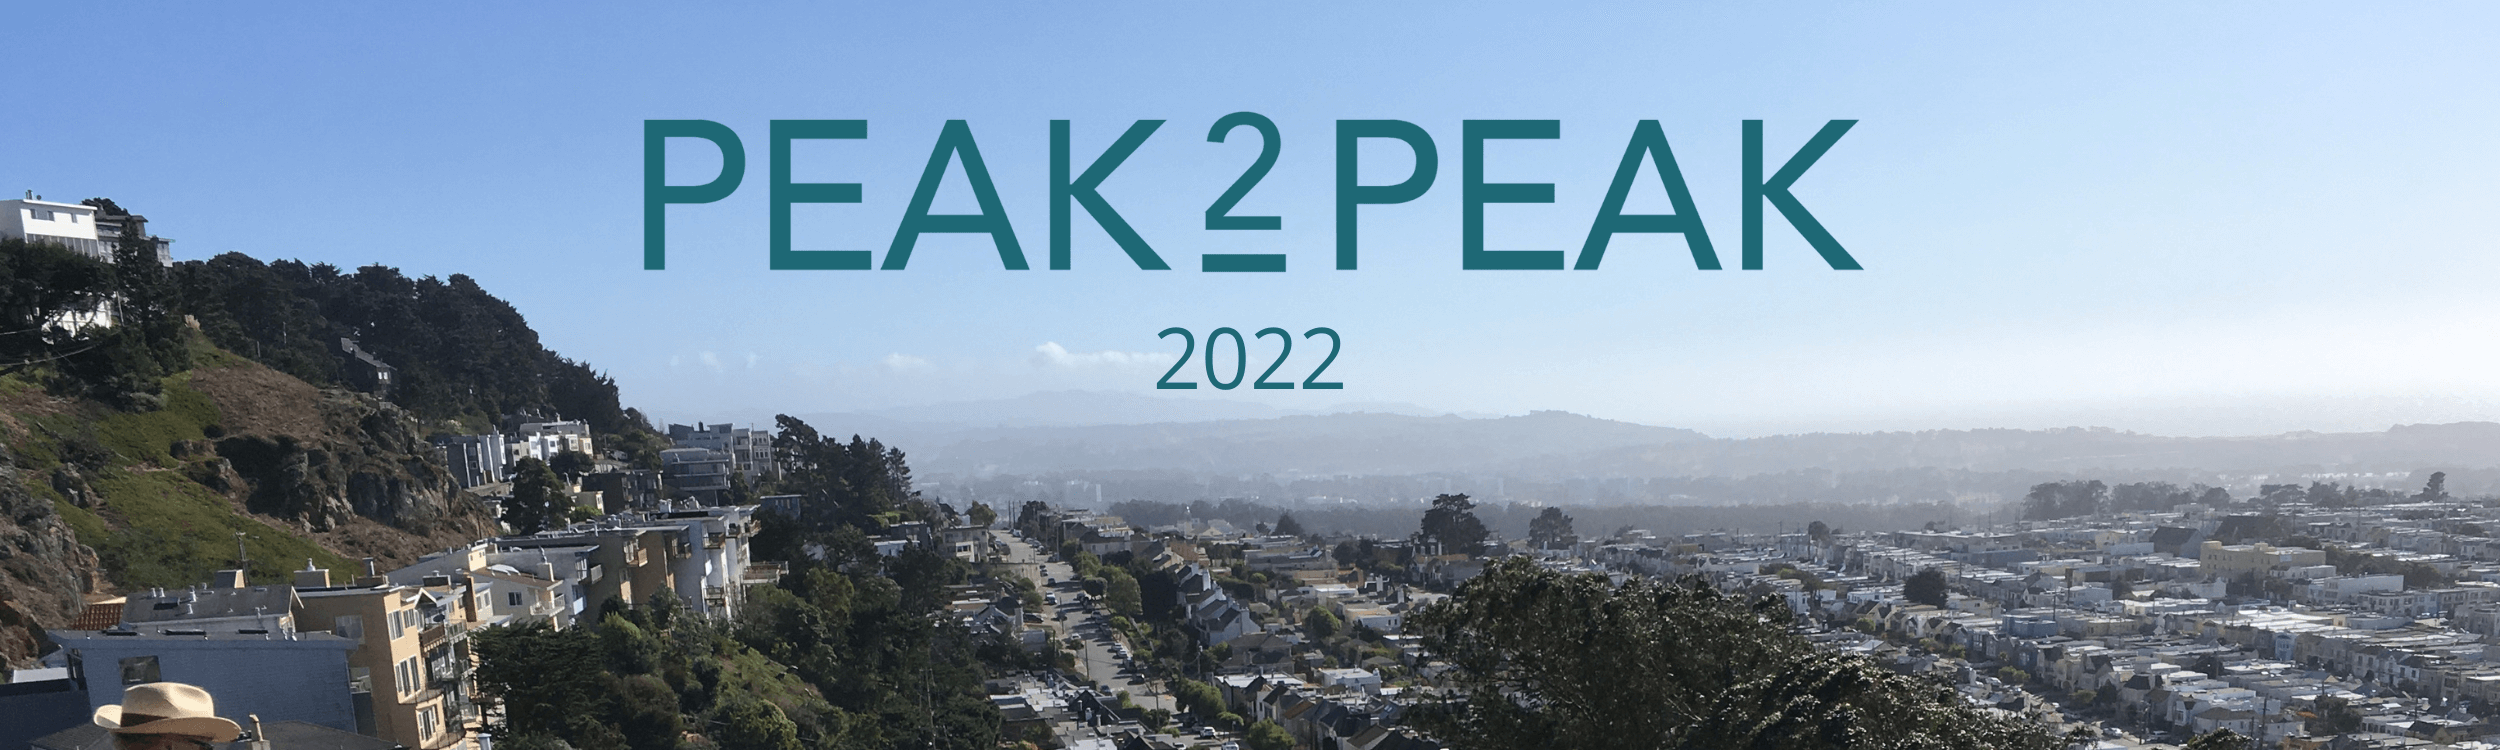 Peak2Peak